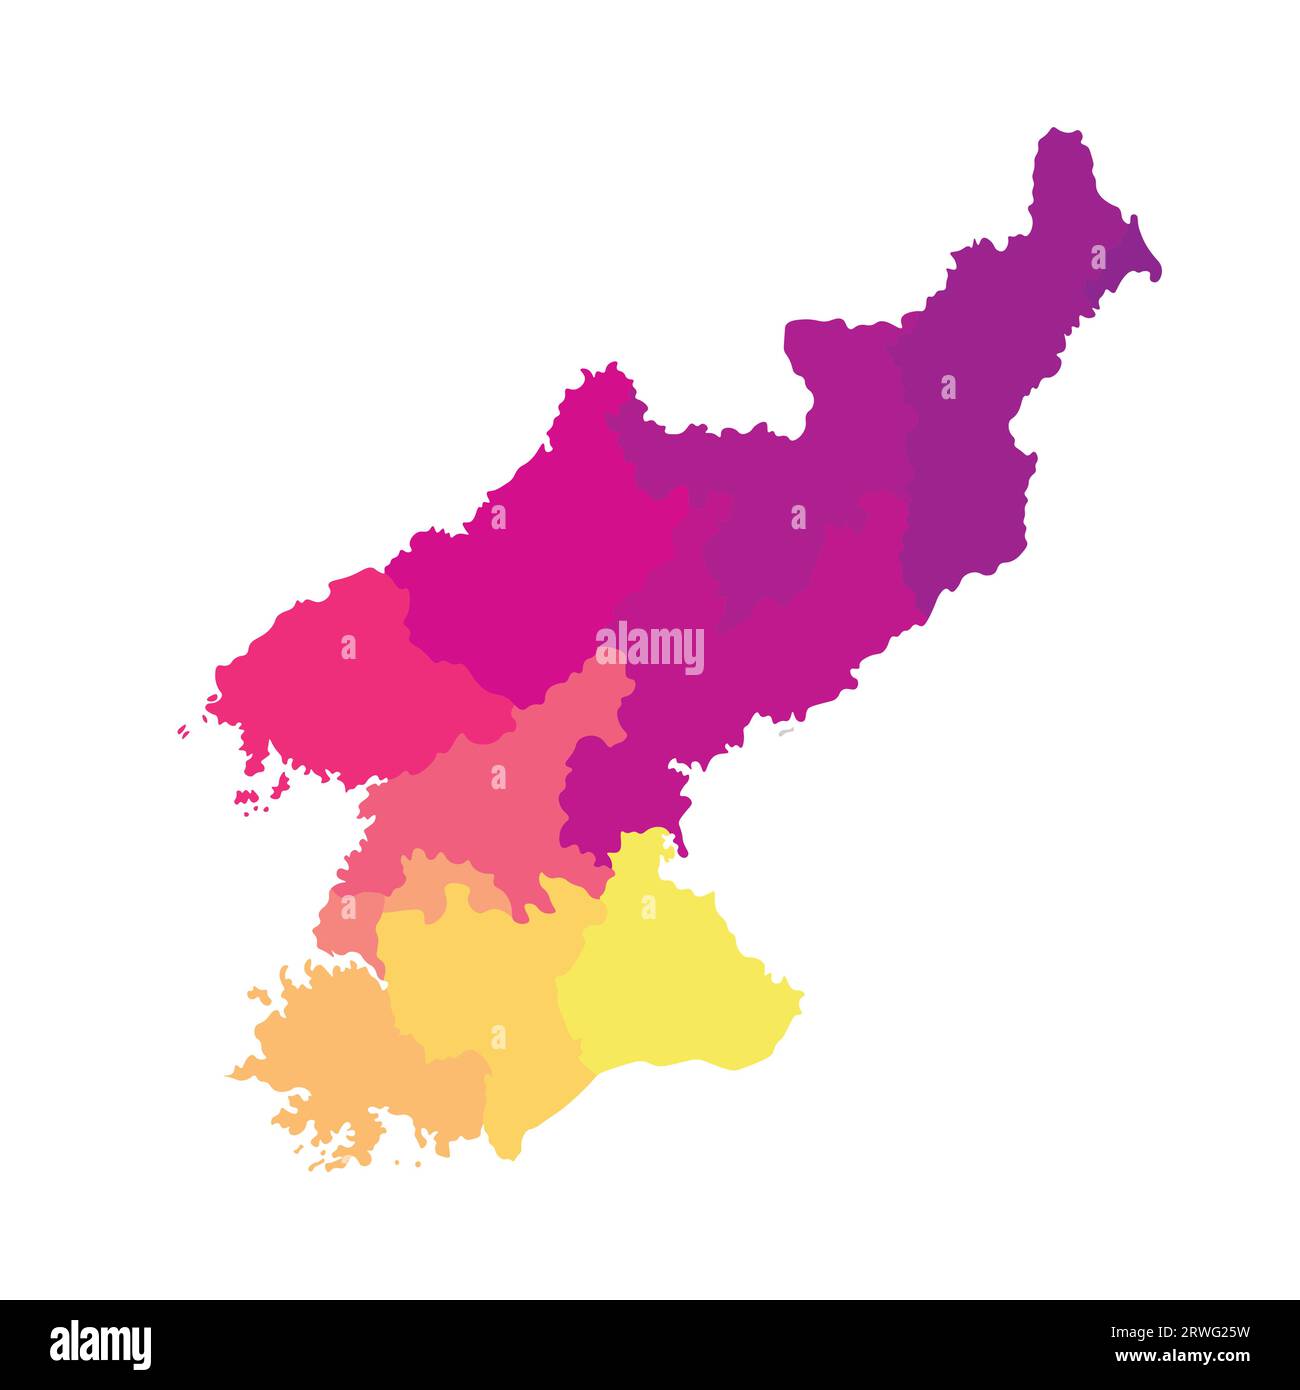 Vektorisolierte Darstellung einer vereinfachten Verwaltungskarte Nordkoreas (Volksrepublik Korea). Grenzen der Regionen. Mehrfarbiger Silho Stock Vektor